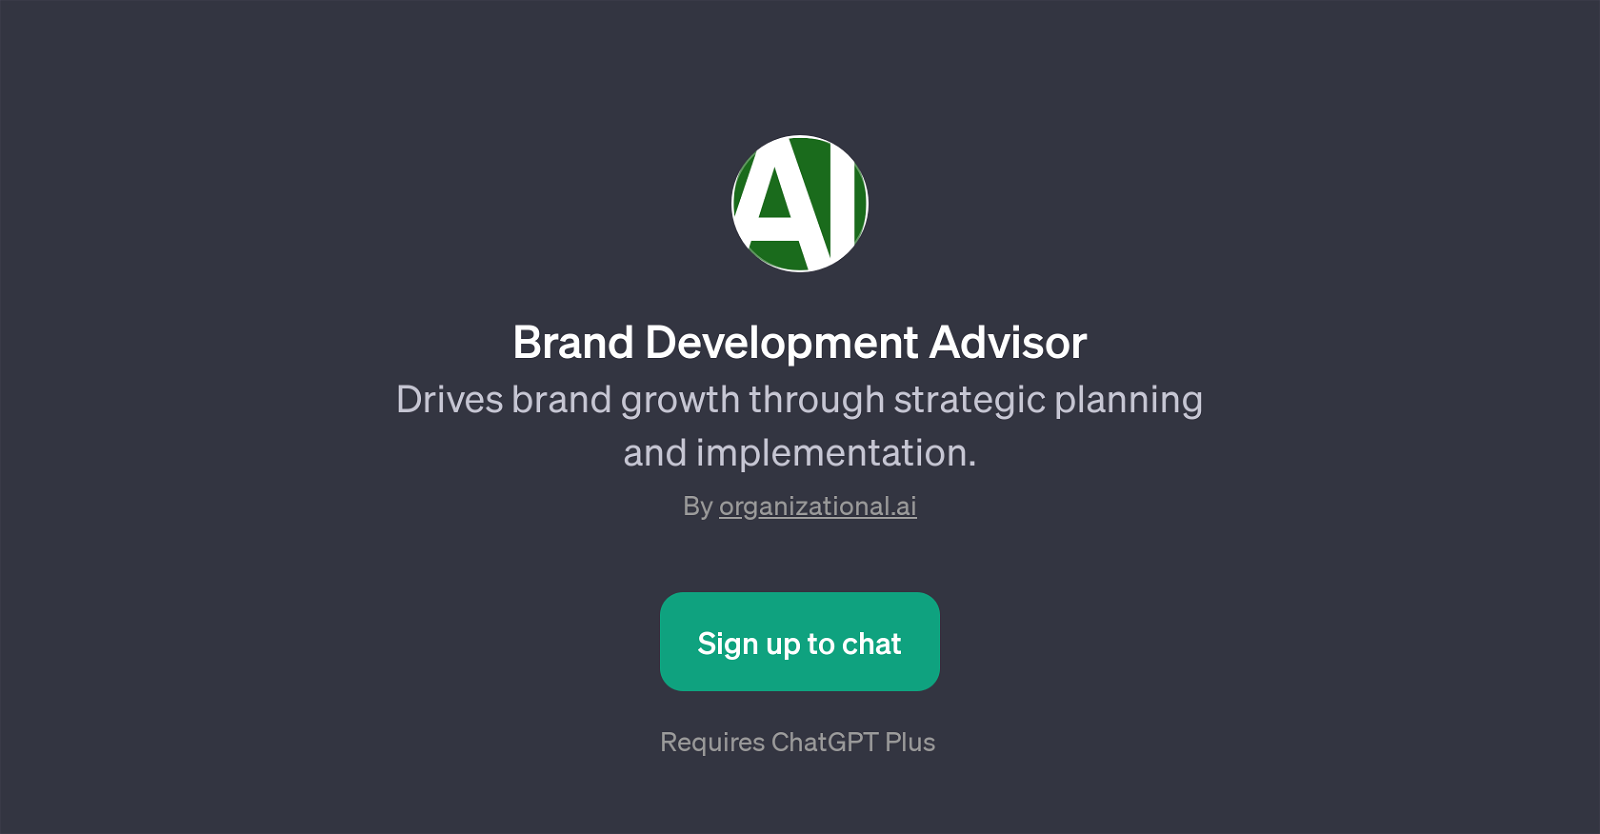 Brand Development Advisor website